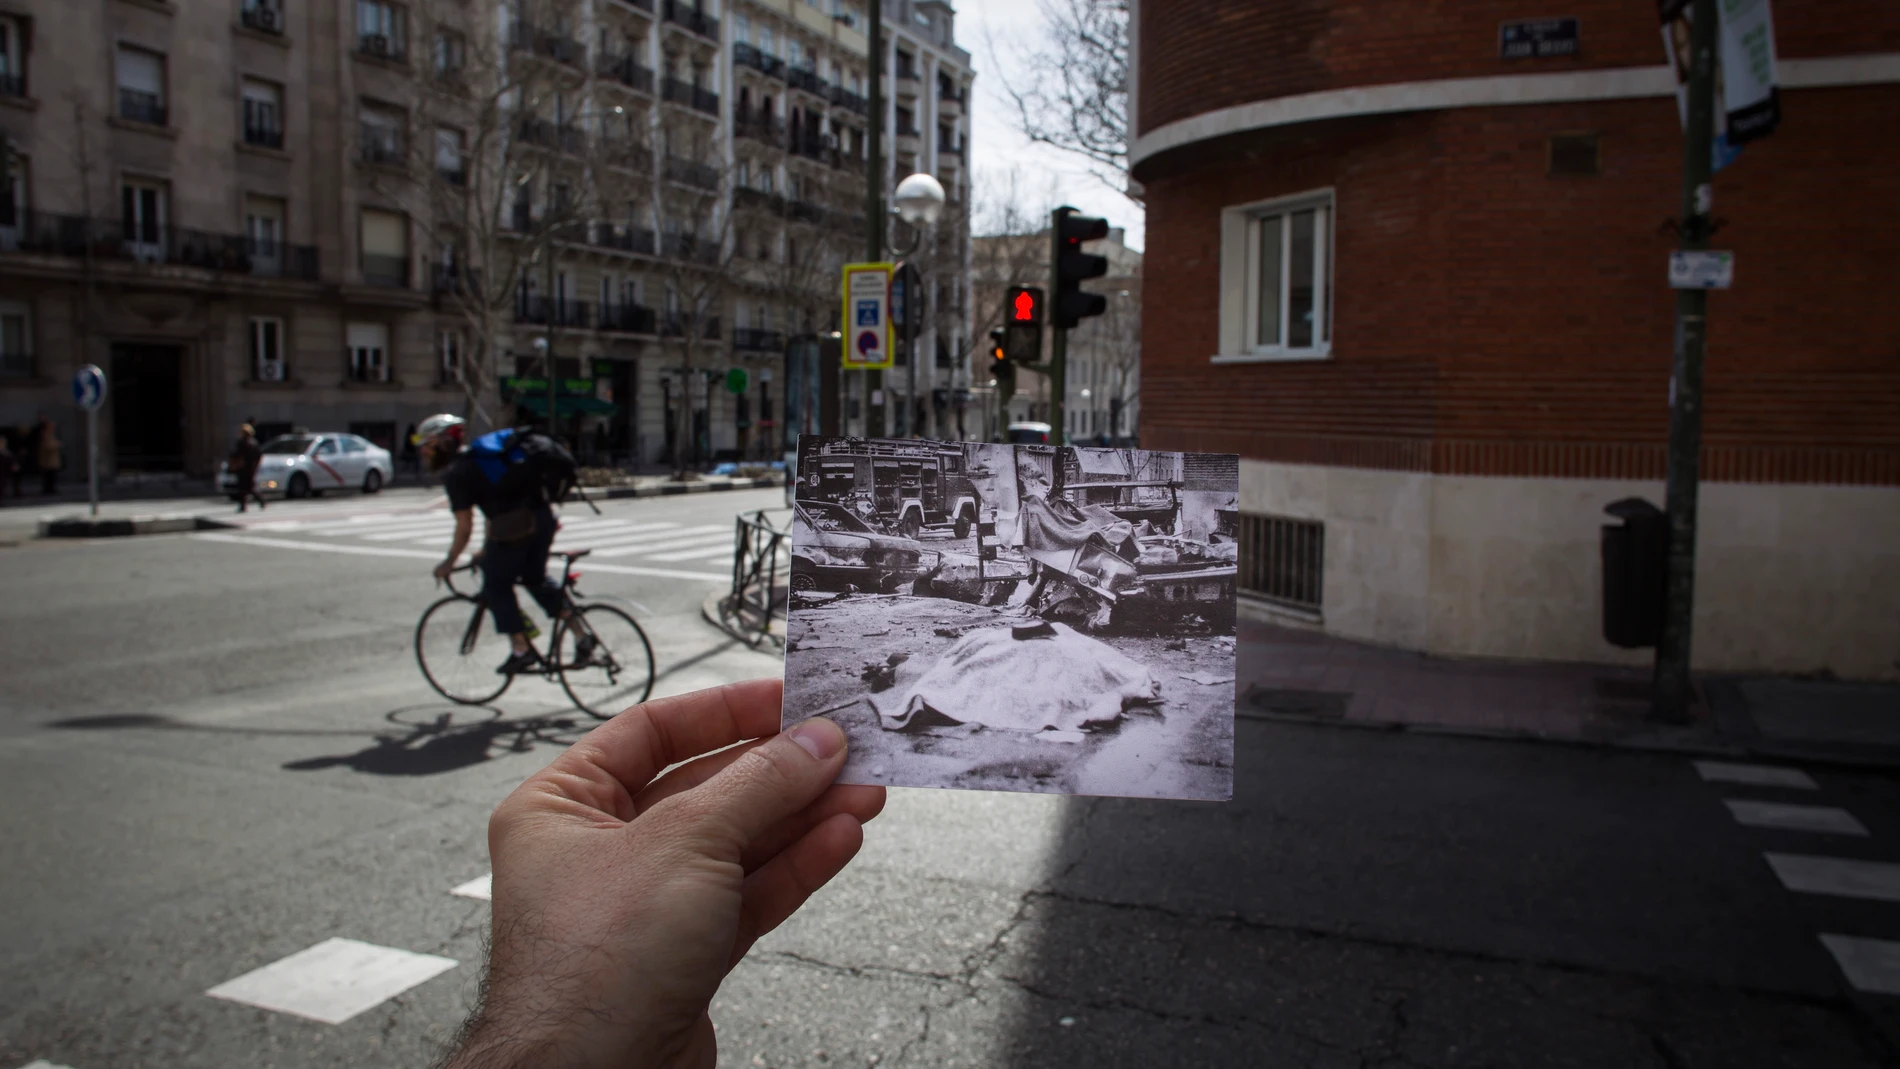 Contraposición de imágenes del antes y el después en la esquina entre las calles de Juan Bravo y Príncipe de Vergara, lugar donde ETA atentó en 1986